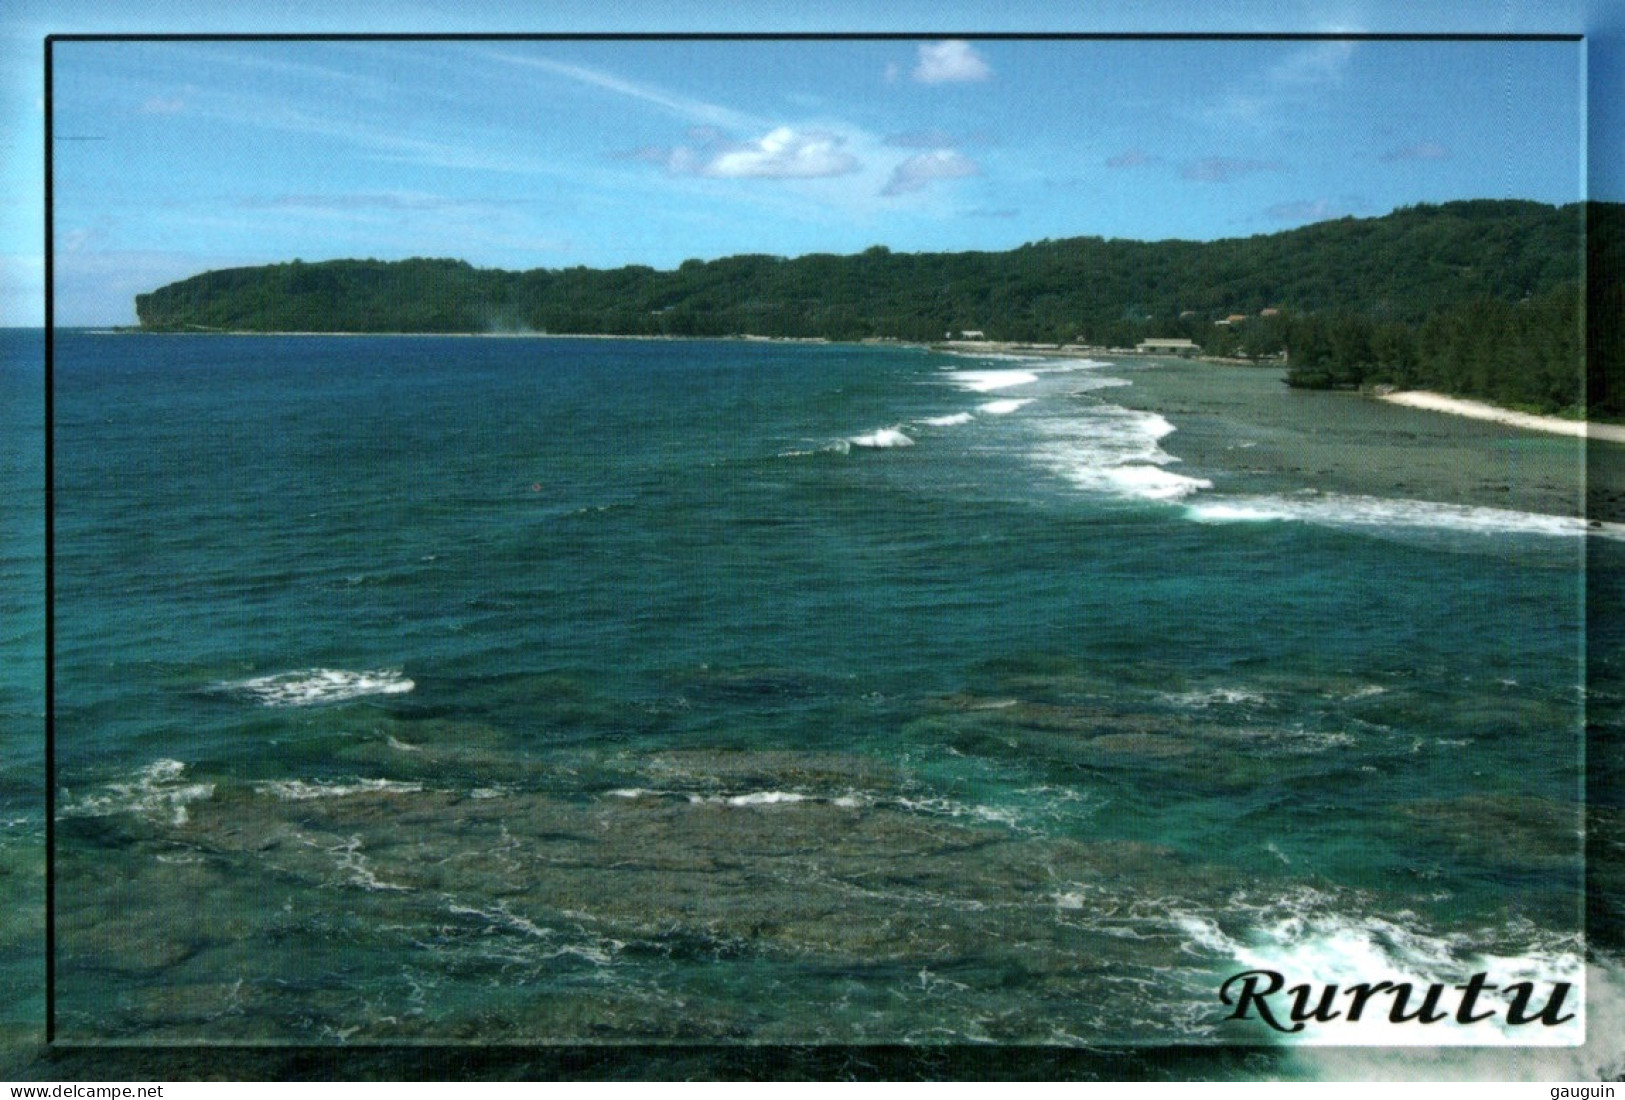 CPM - RURUTU - Baie De MOERAI - Photo RC.Wymann - Edition STP Multipress - Französisch-Polynesien